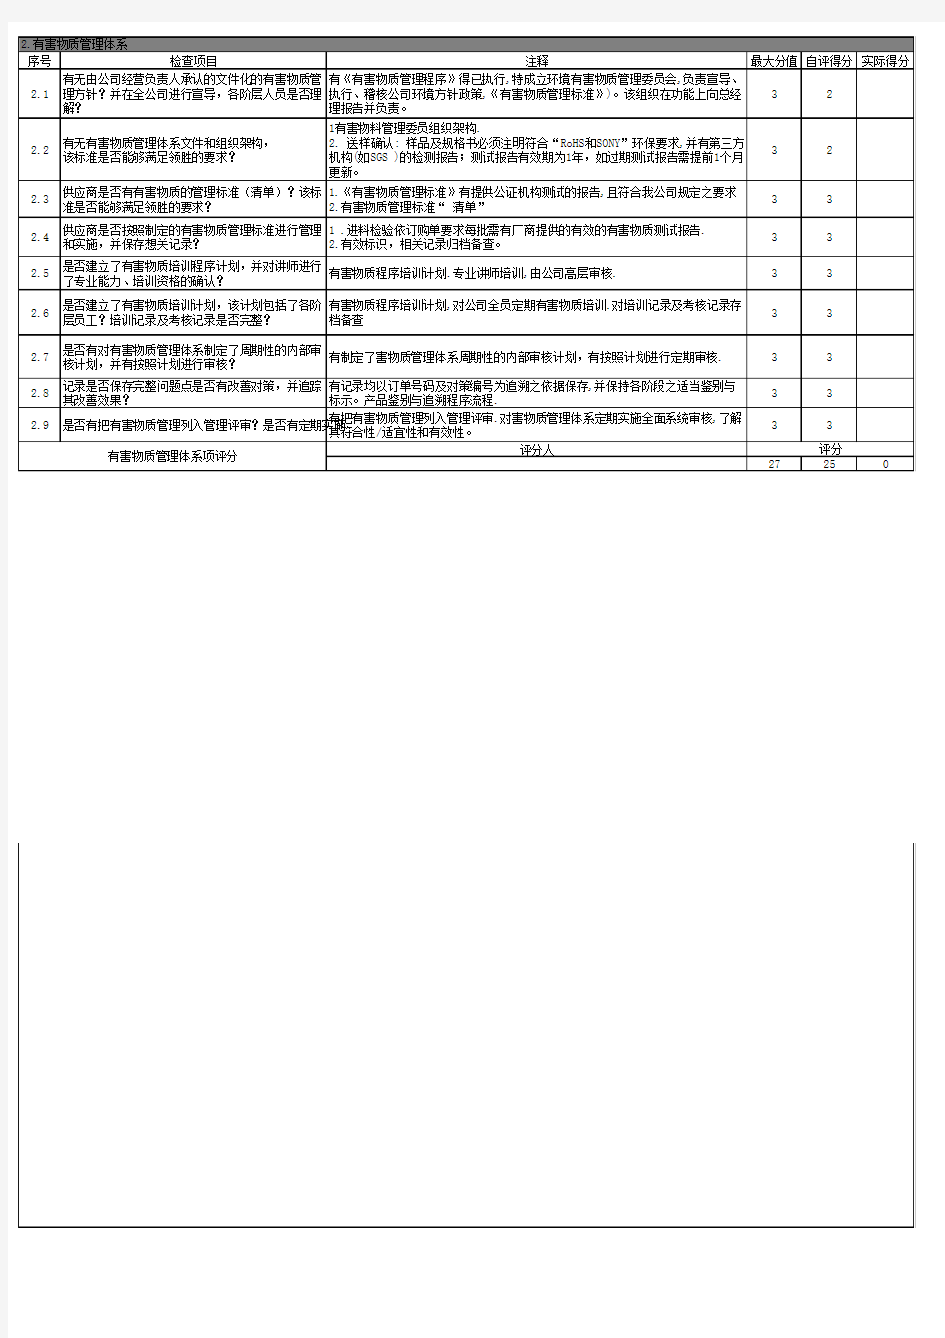 供应商审核项目评分表